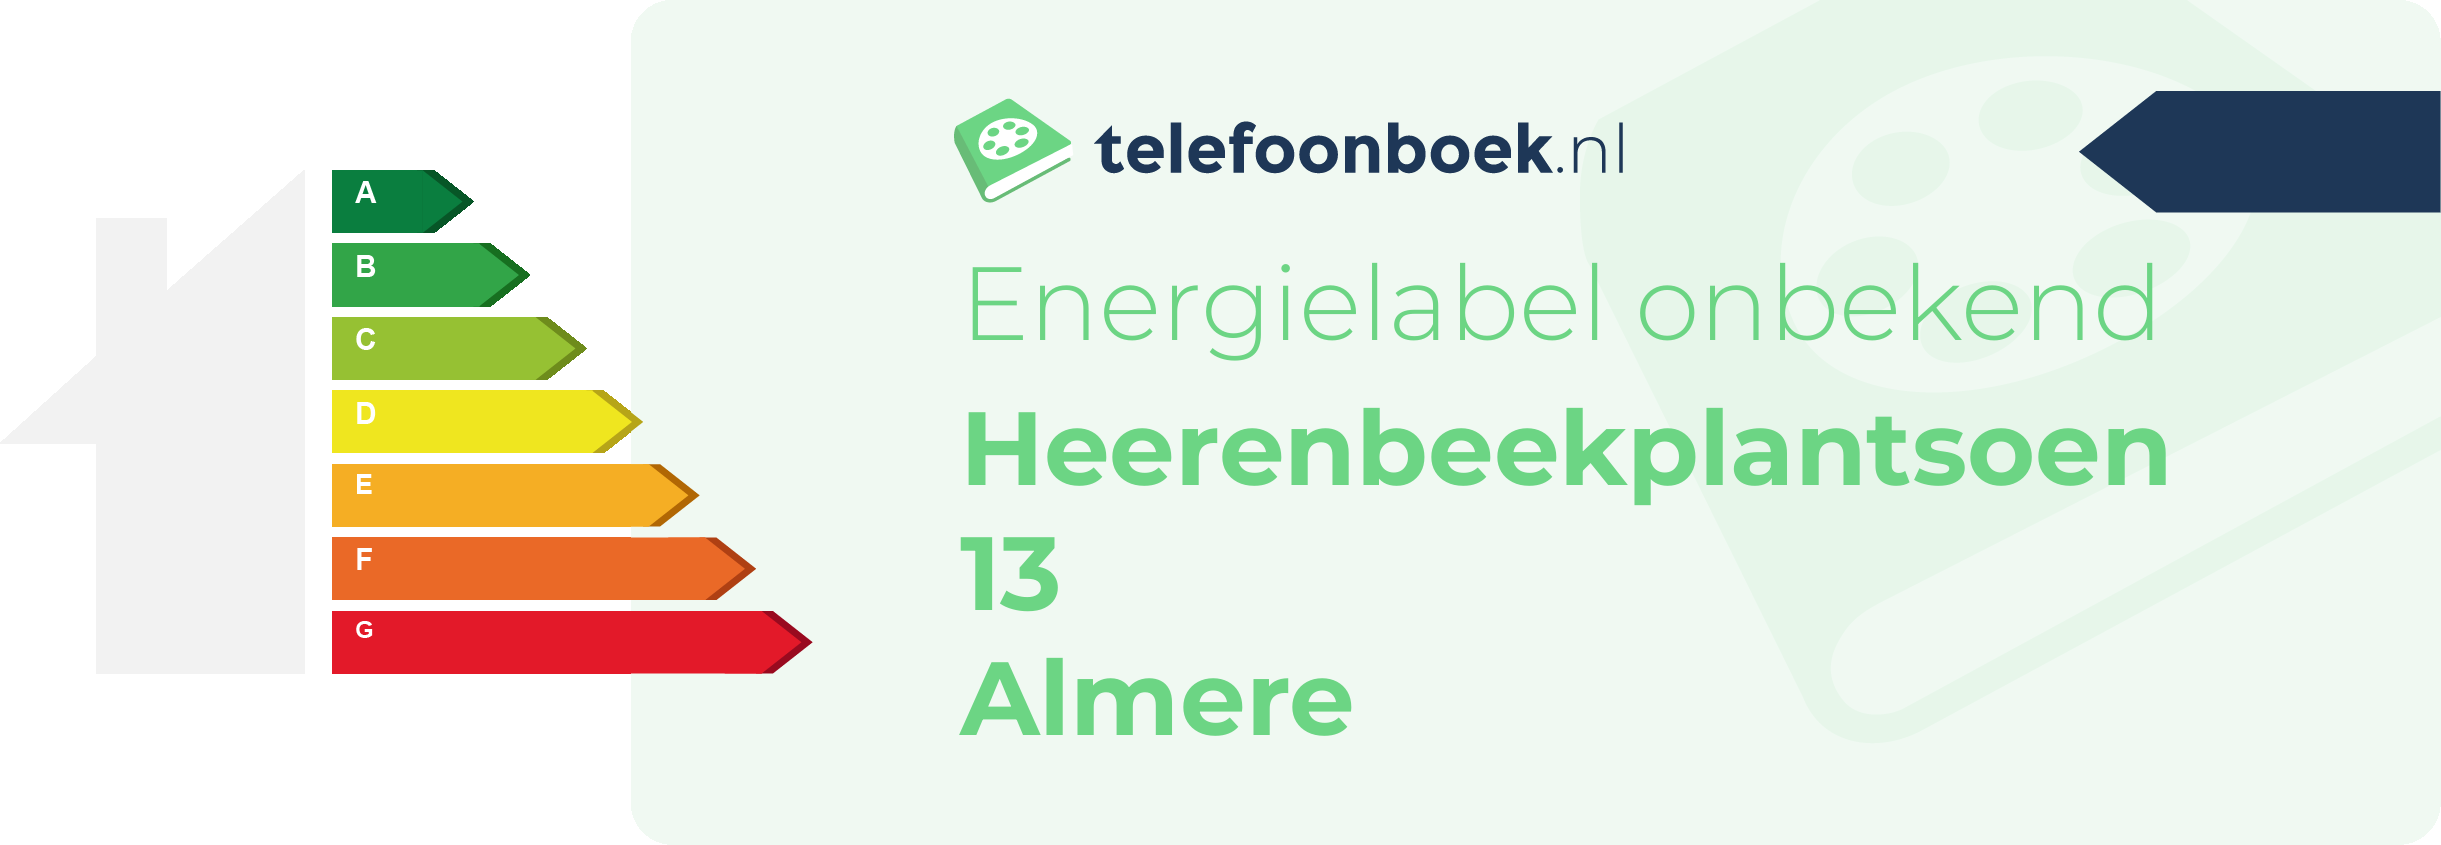 Energielabel Heerenbeekplantsoen 13 Almere